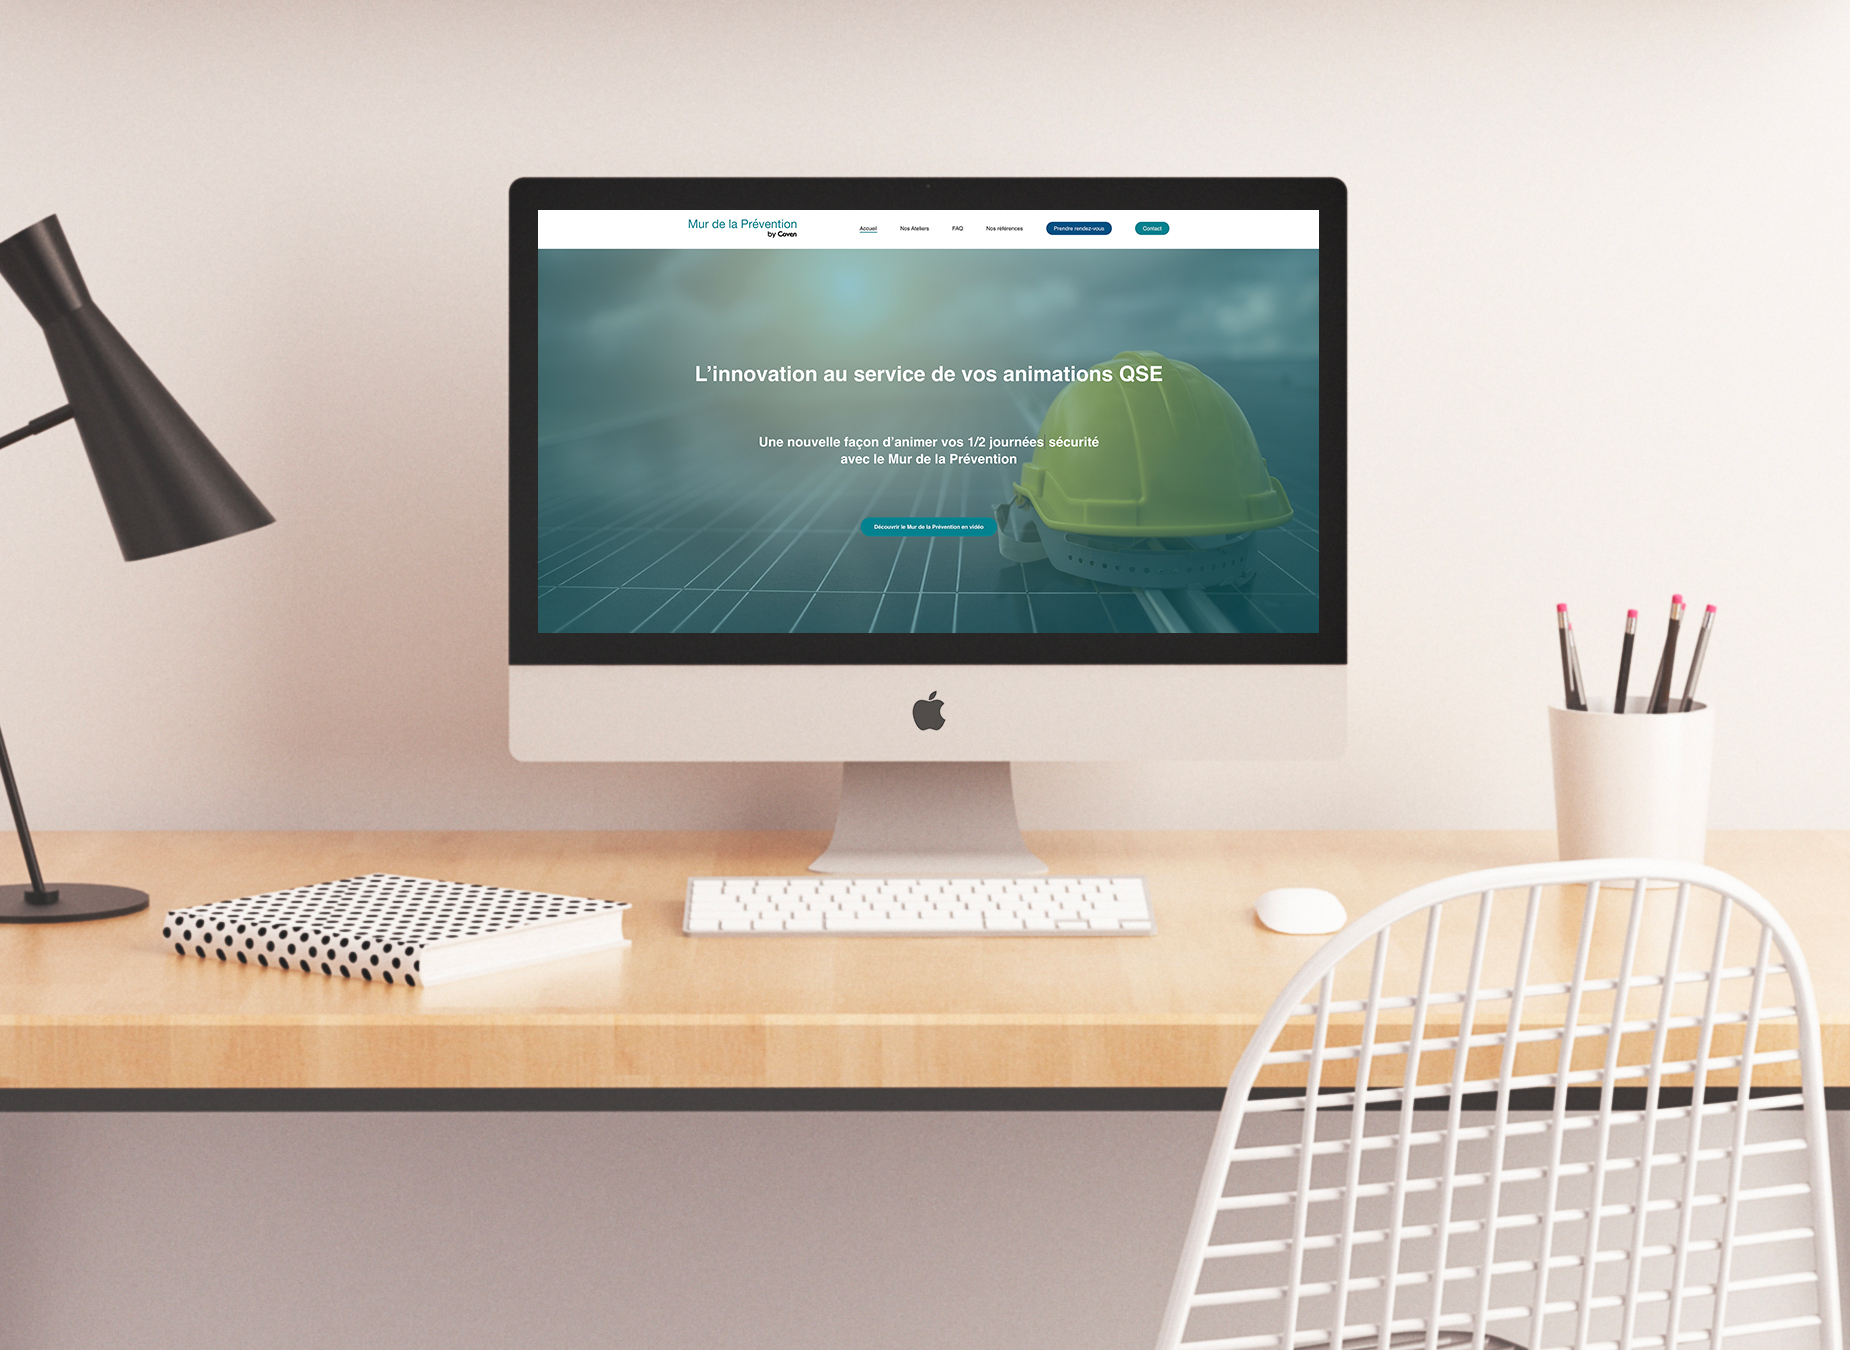 iMac posé sur un bureau et allumé avec la page internet du site Mur de la Prévention